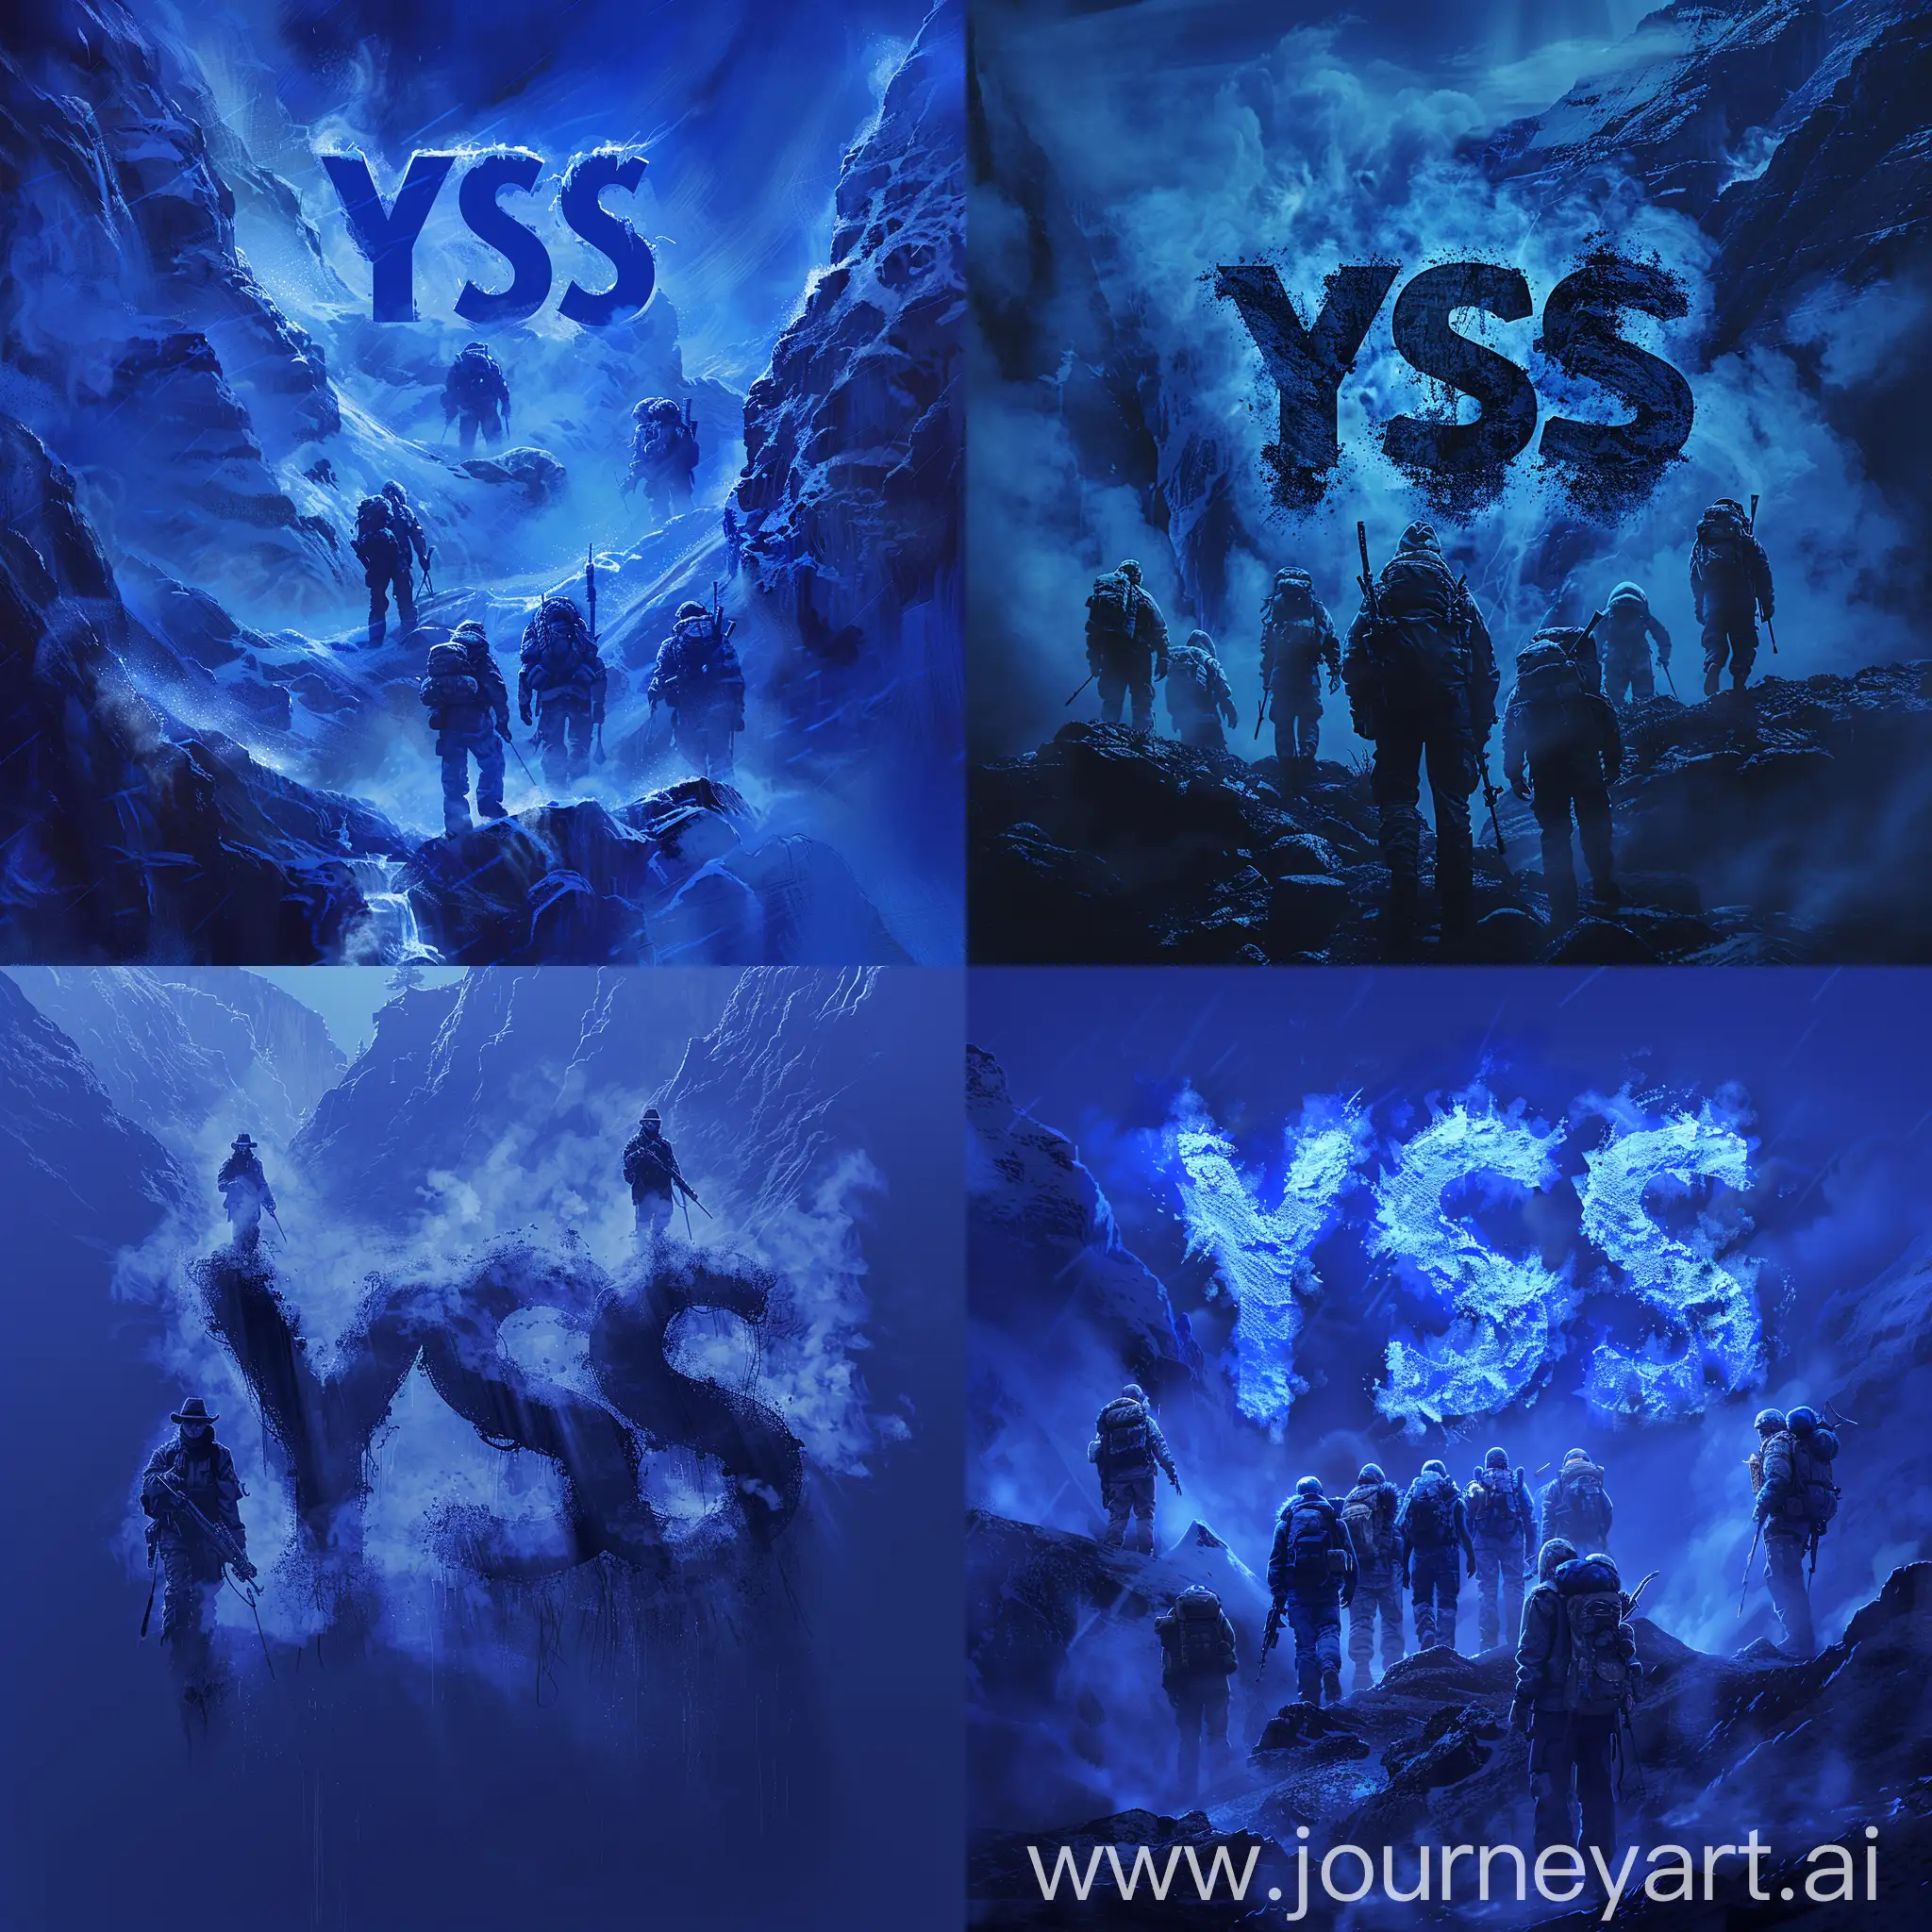 Темно-синие буквы "YSS", окруженные рейнджерами и туманными контурами, что придает образу таинственности и загадочности, --s 250